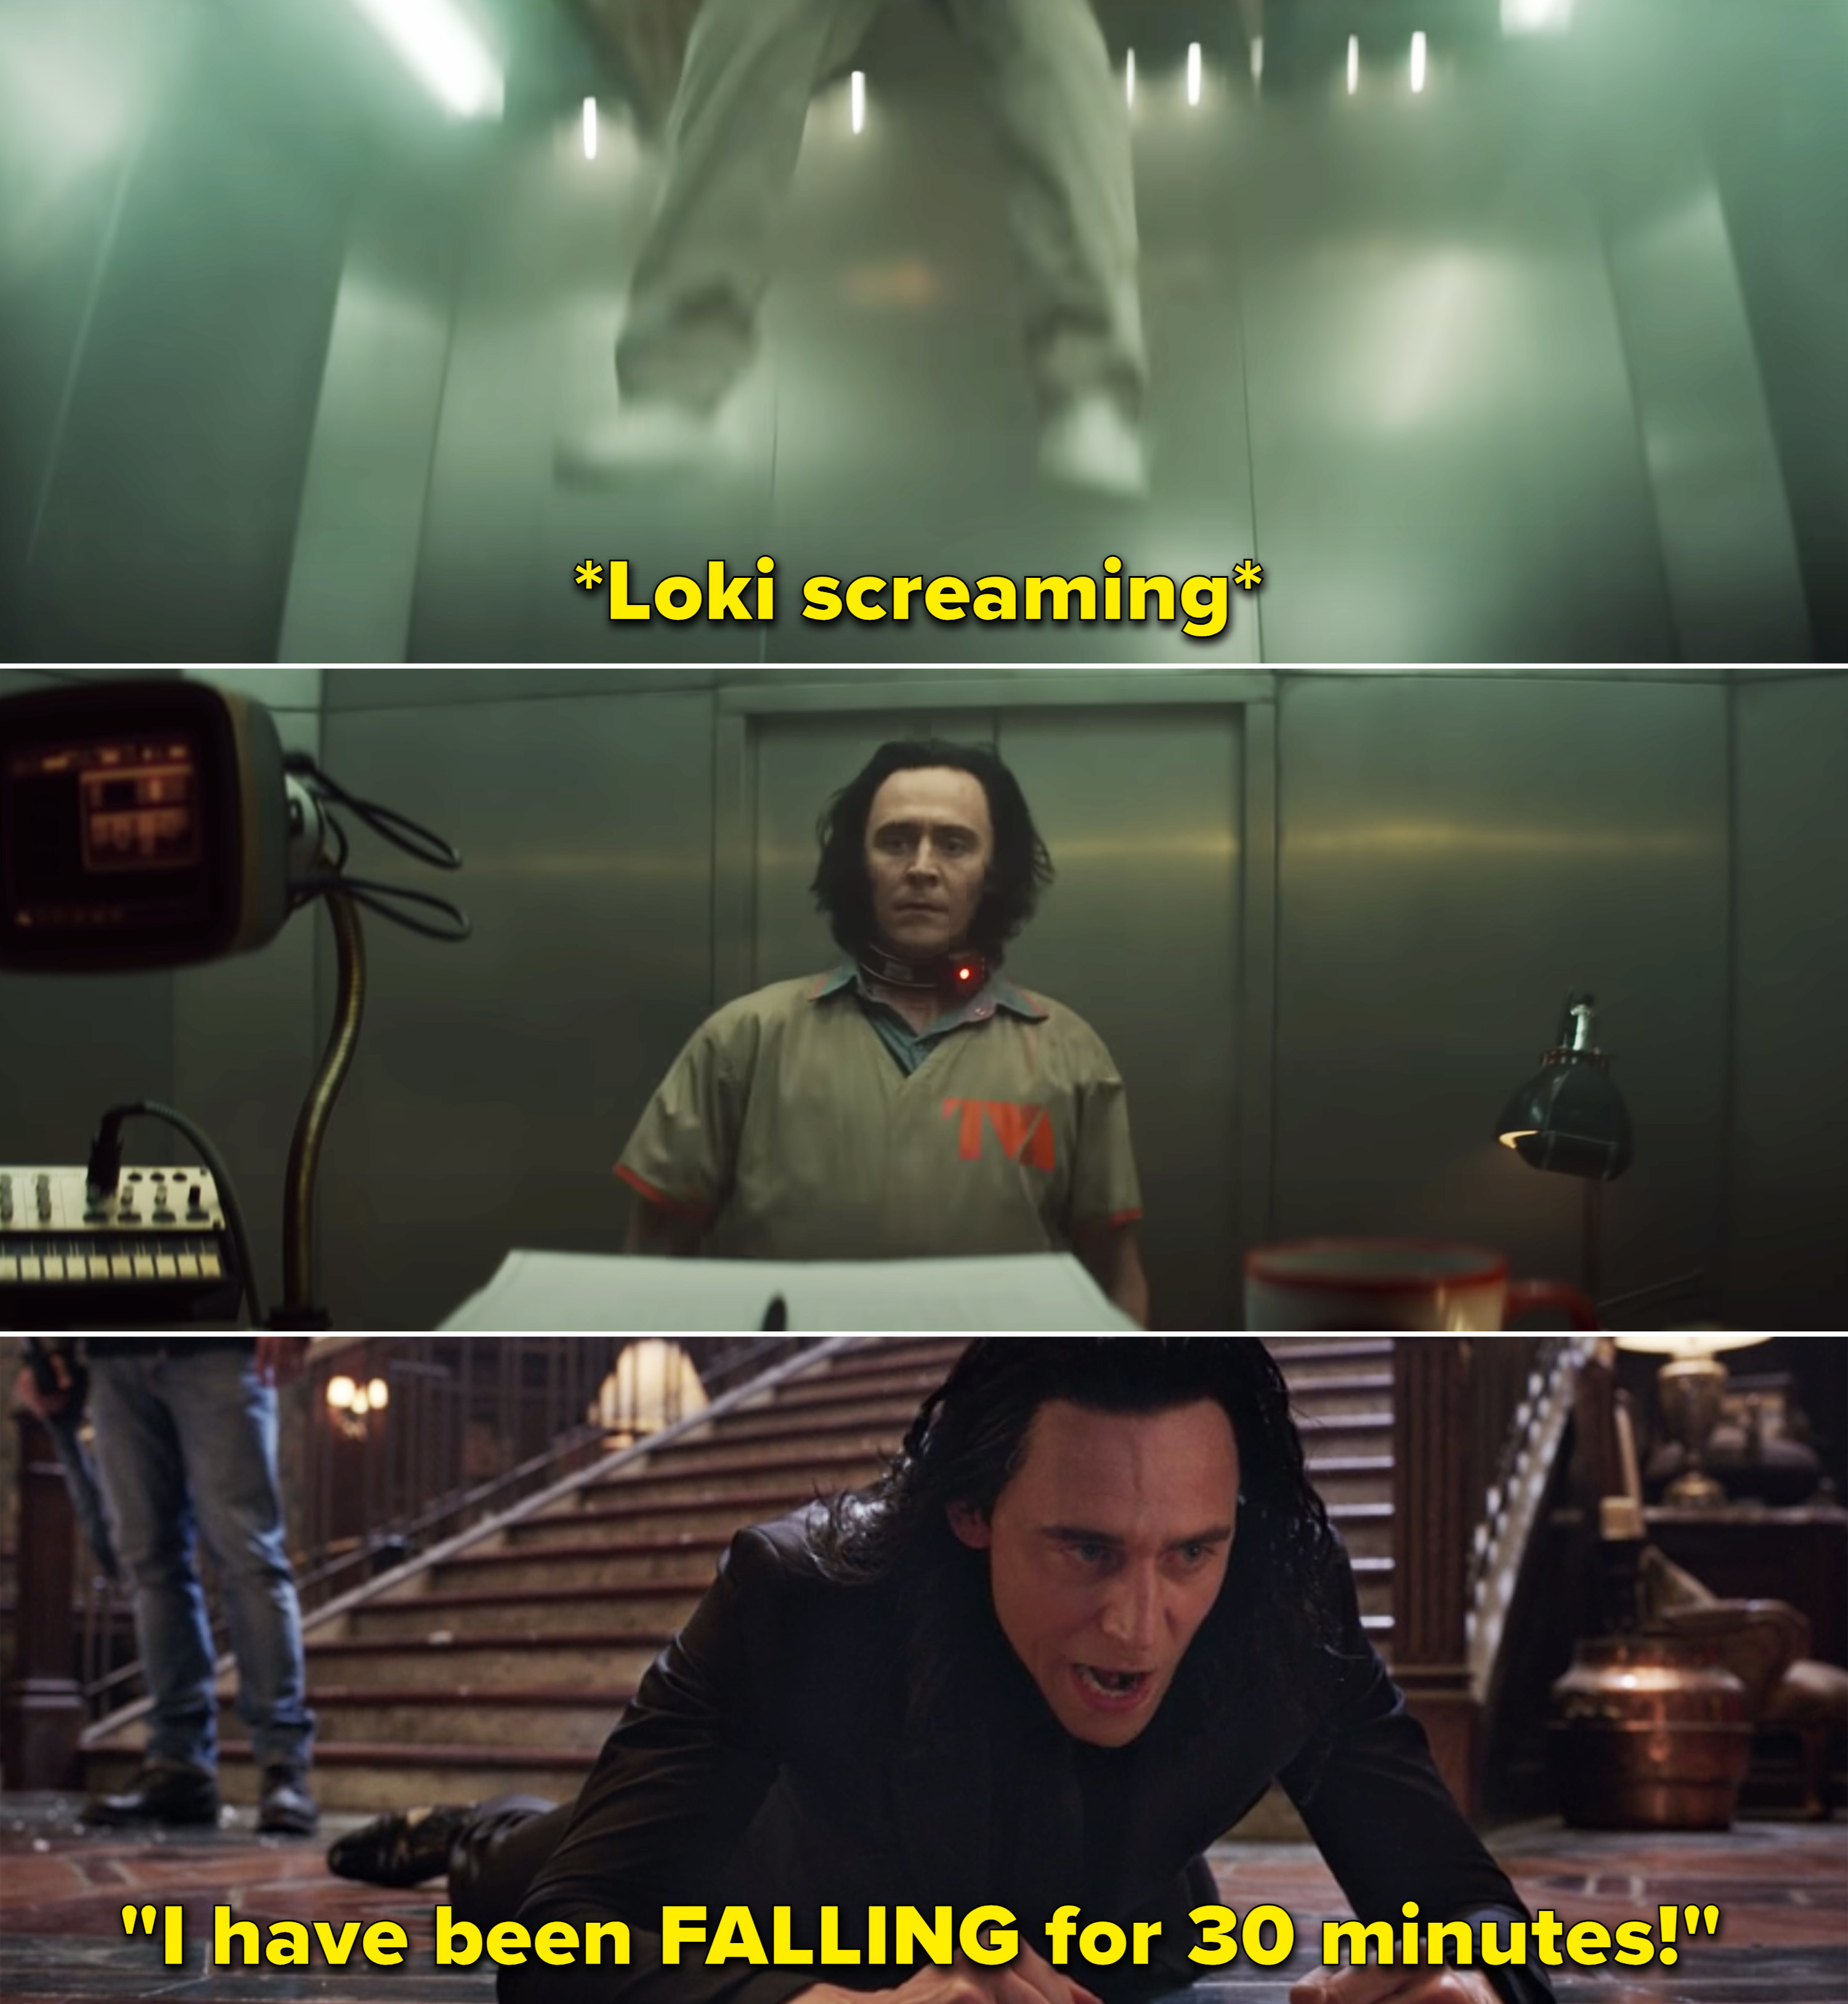 洛基screaming vs. Loki saying, "I have been falling for 30 minutes"